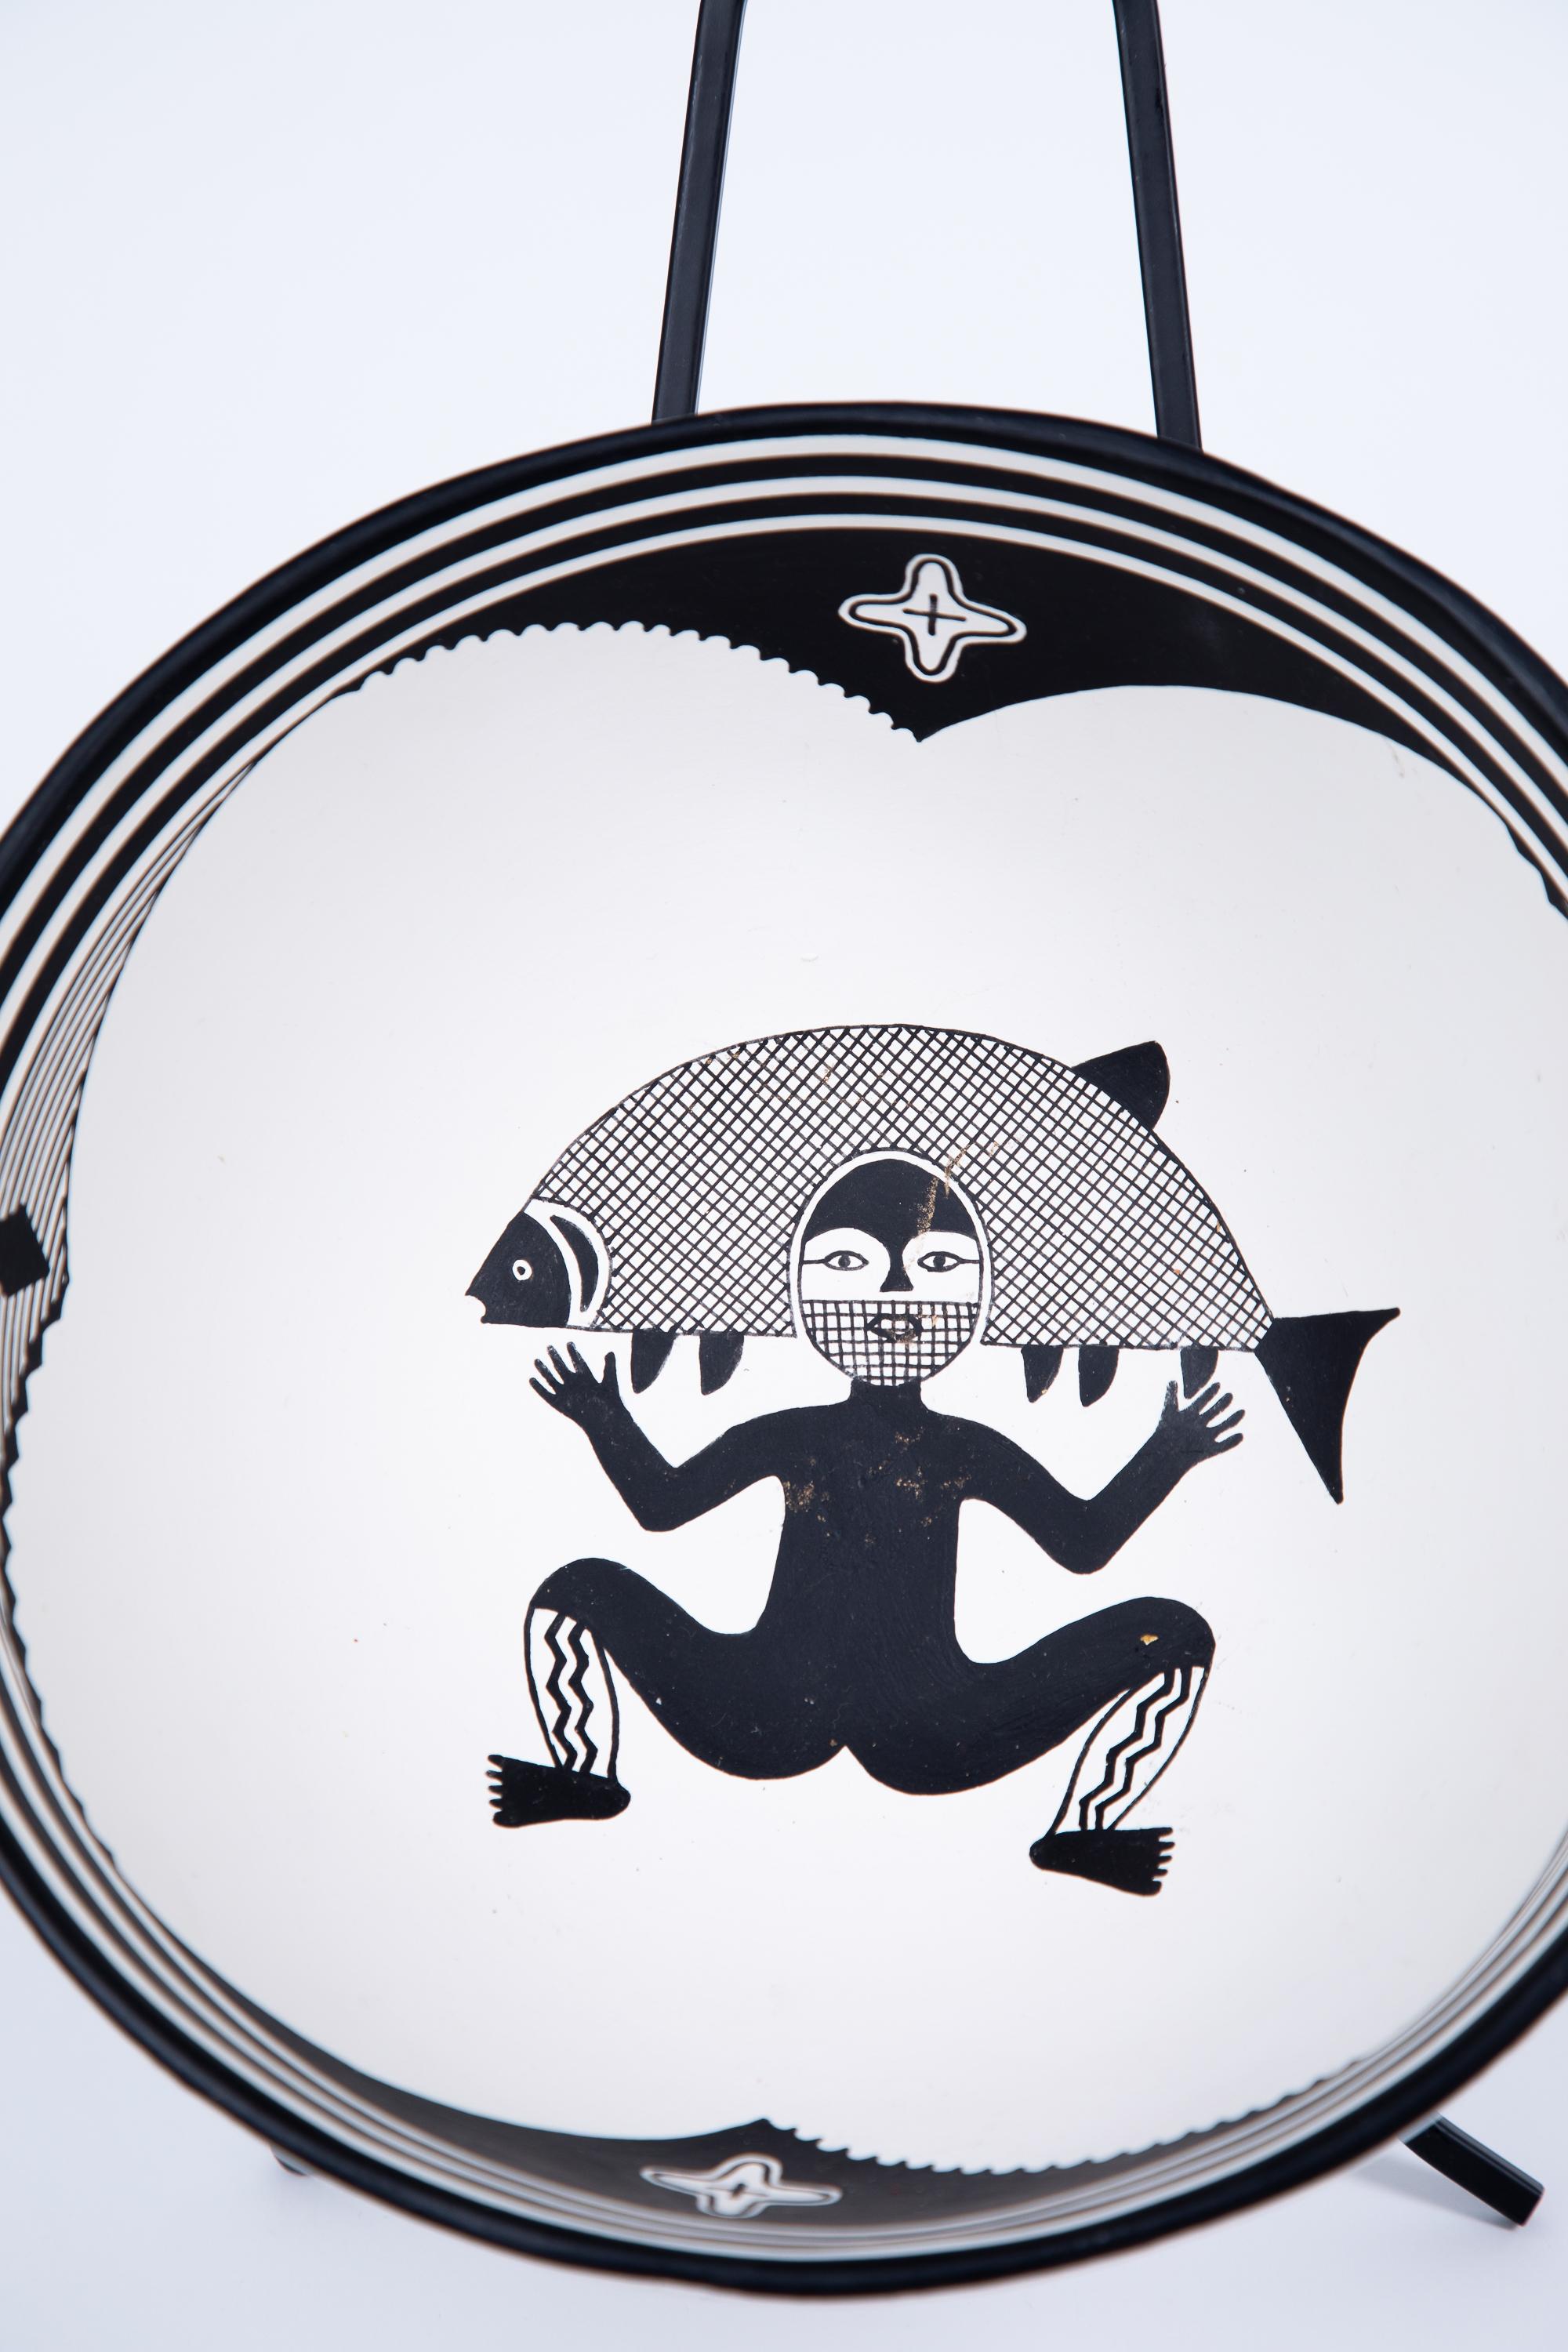 Handgefertigte Mimbre-Schale aus weißem Ton mit Fischermotiv der amerikanischen Ureinwohner. Unten signiert Pablo Lopez.
In den 1980er Jahren vom Künstler erworben, Zentralmexiko